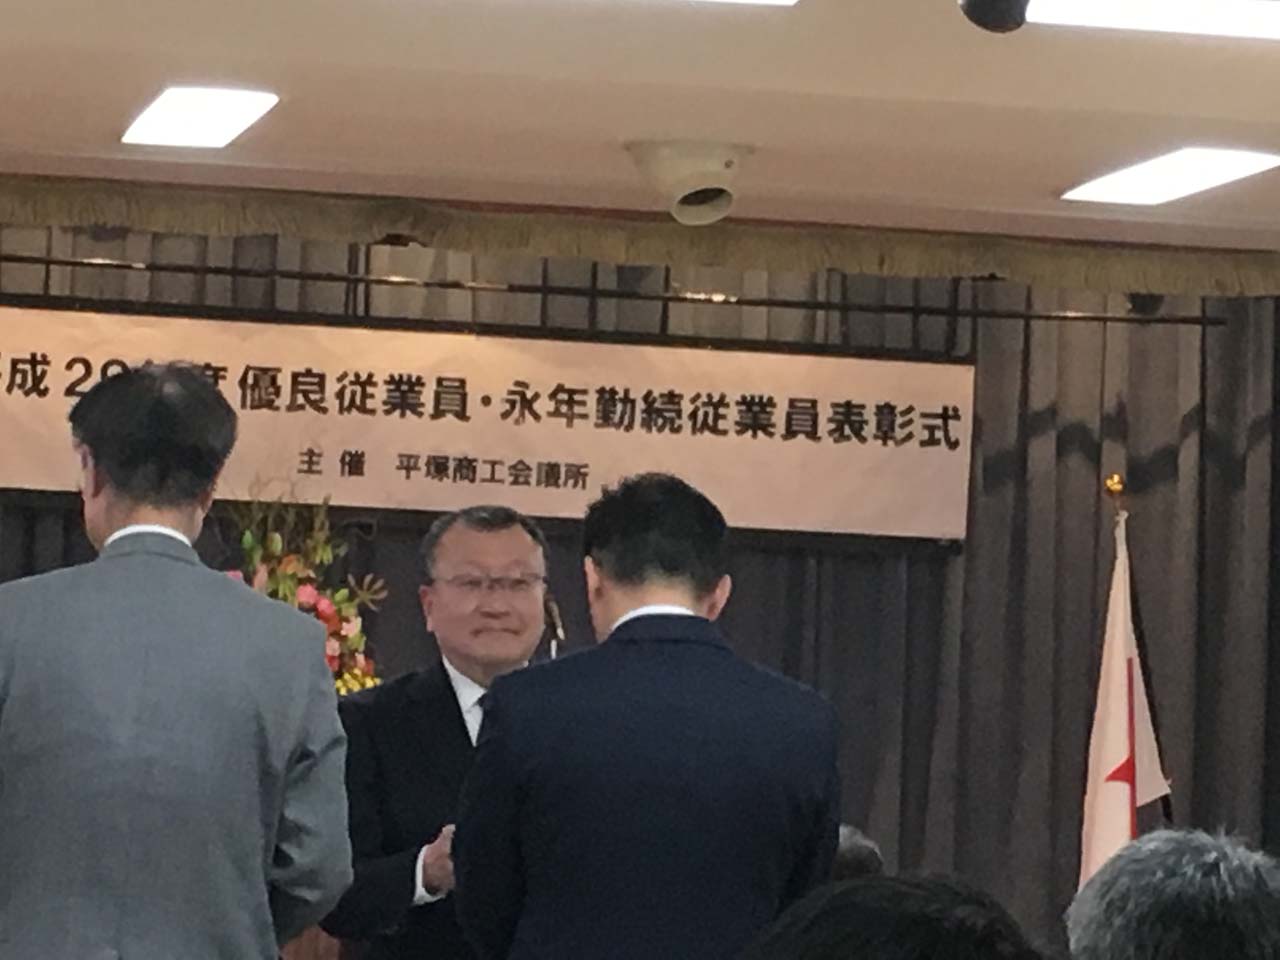 平塚市永年勤続従業員の表彰式